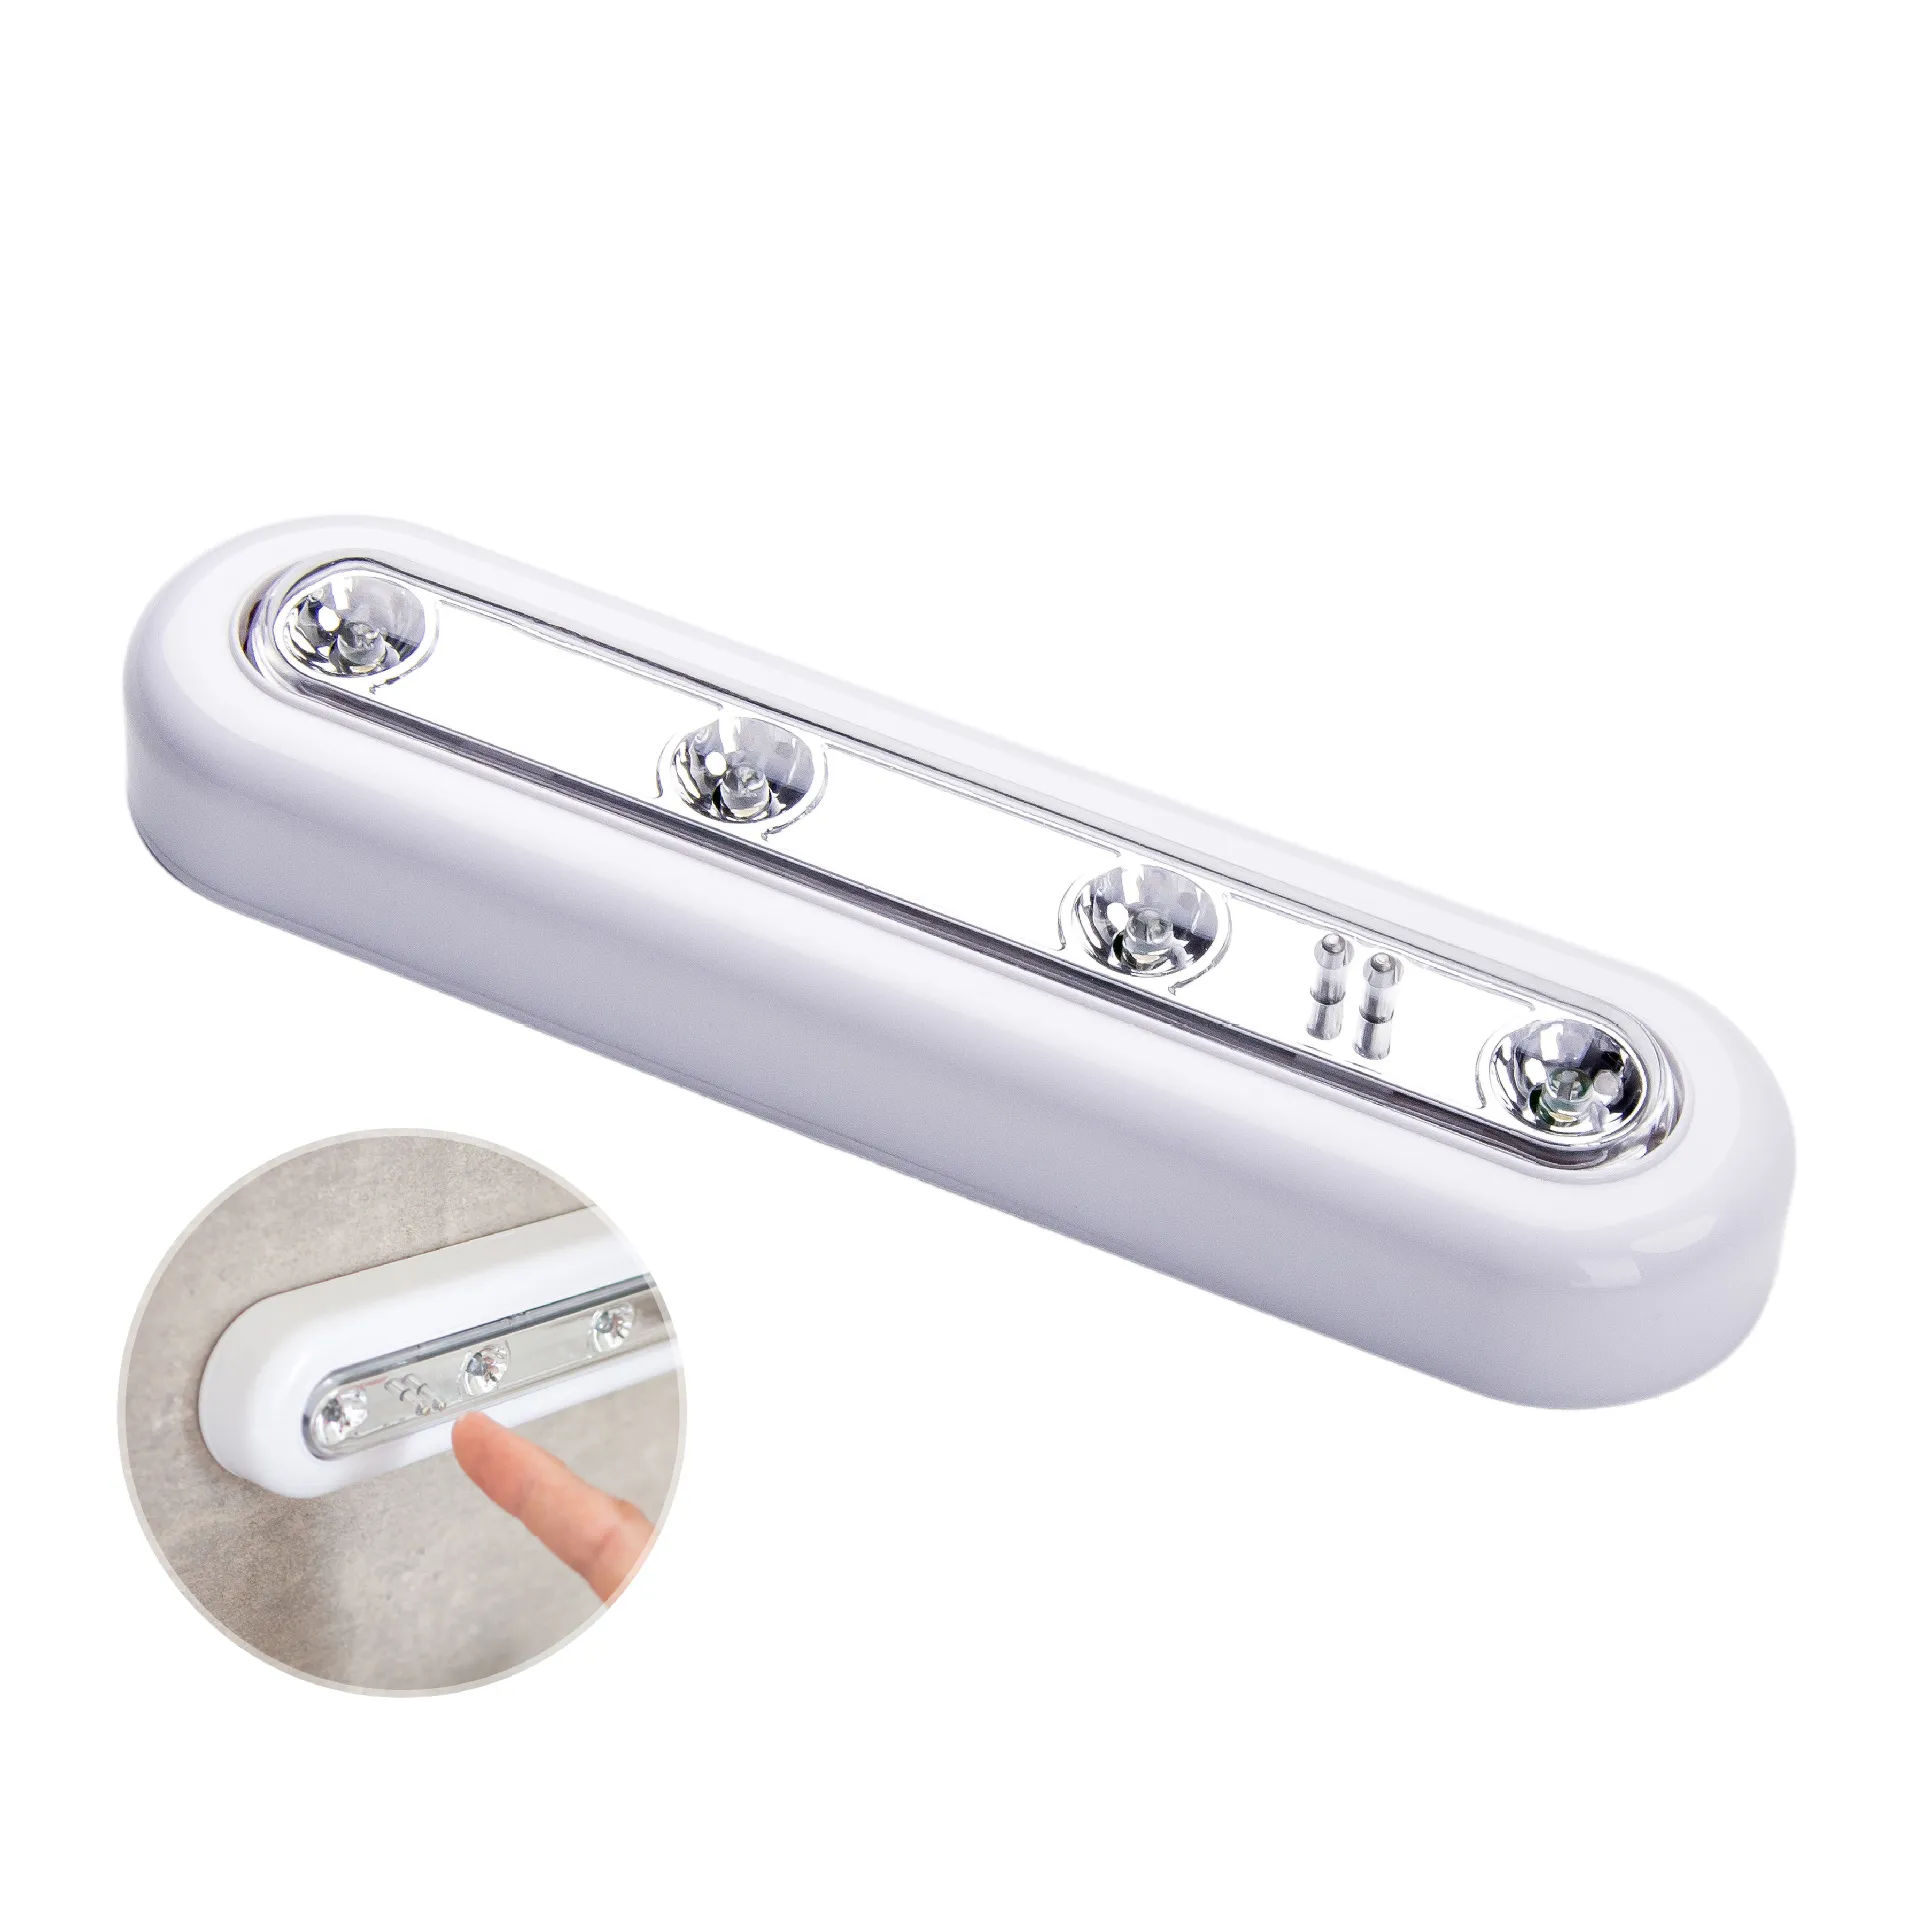 Sensore interno Luci tattili Batterie bianche senza fili Sotto l'armadio Push Tap Stick Lamp On 4 LED Night Light Funzionamento di emergenza